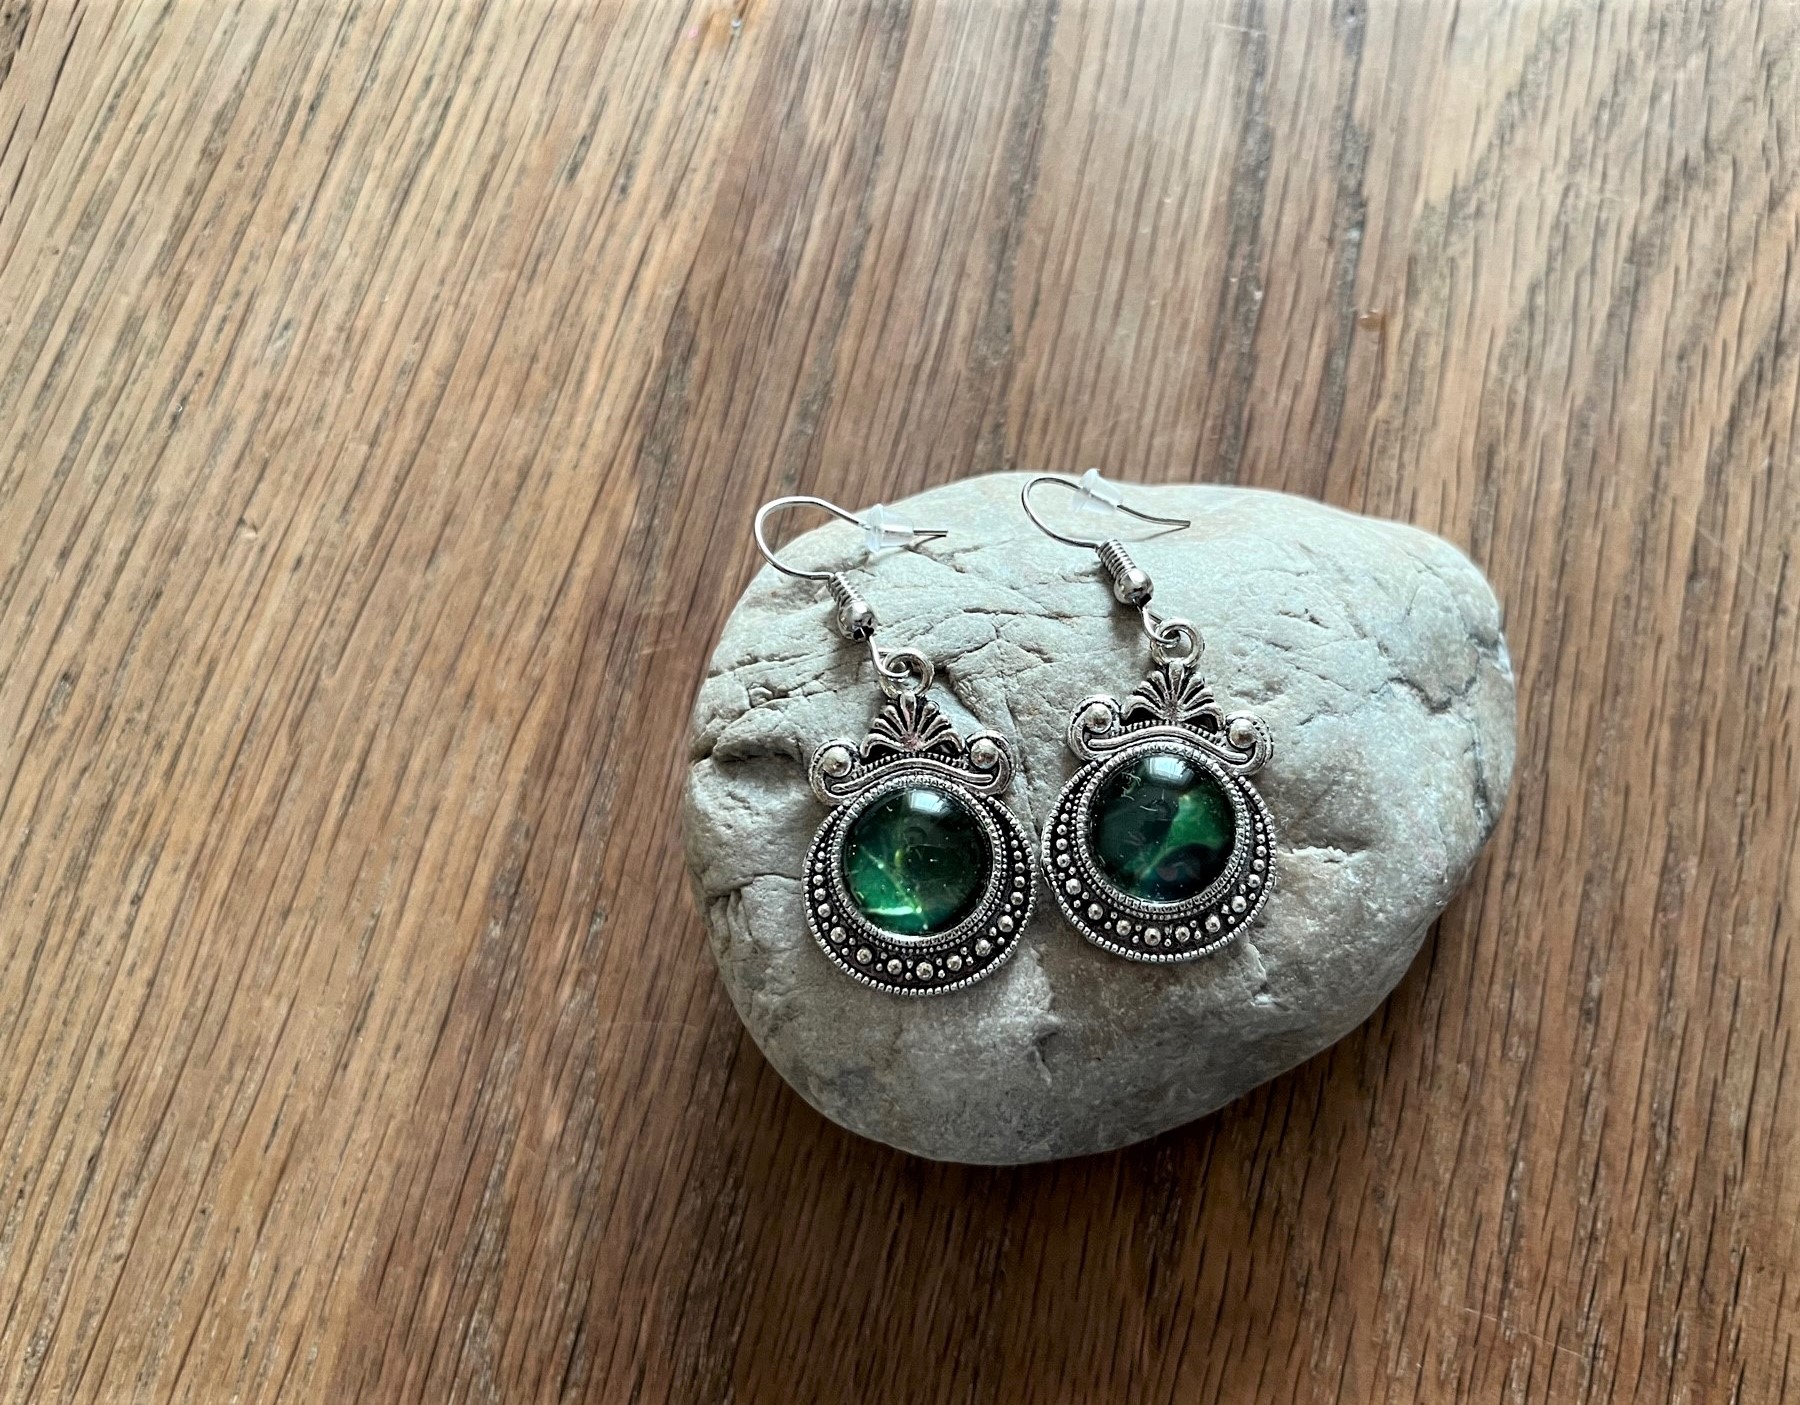 Ohrringe silber/grün mit echtem Efeublatt hinter Glas